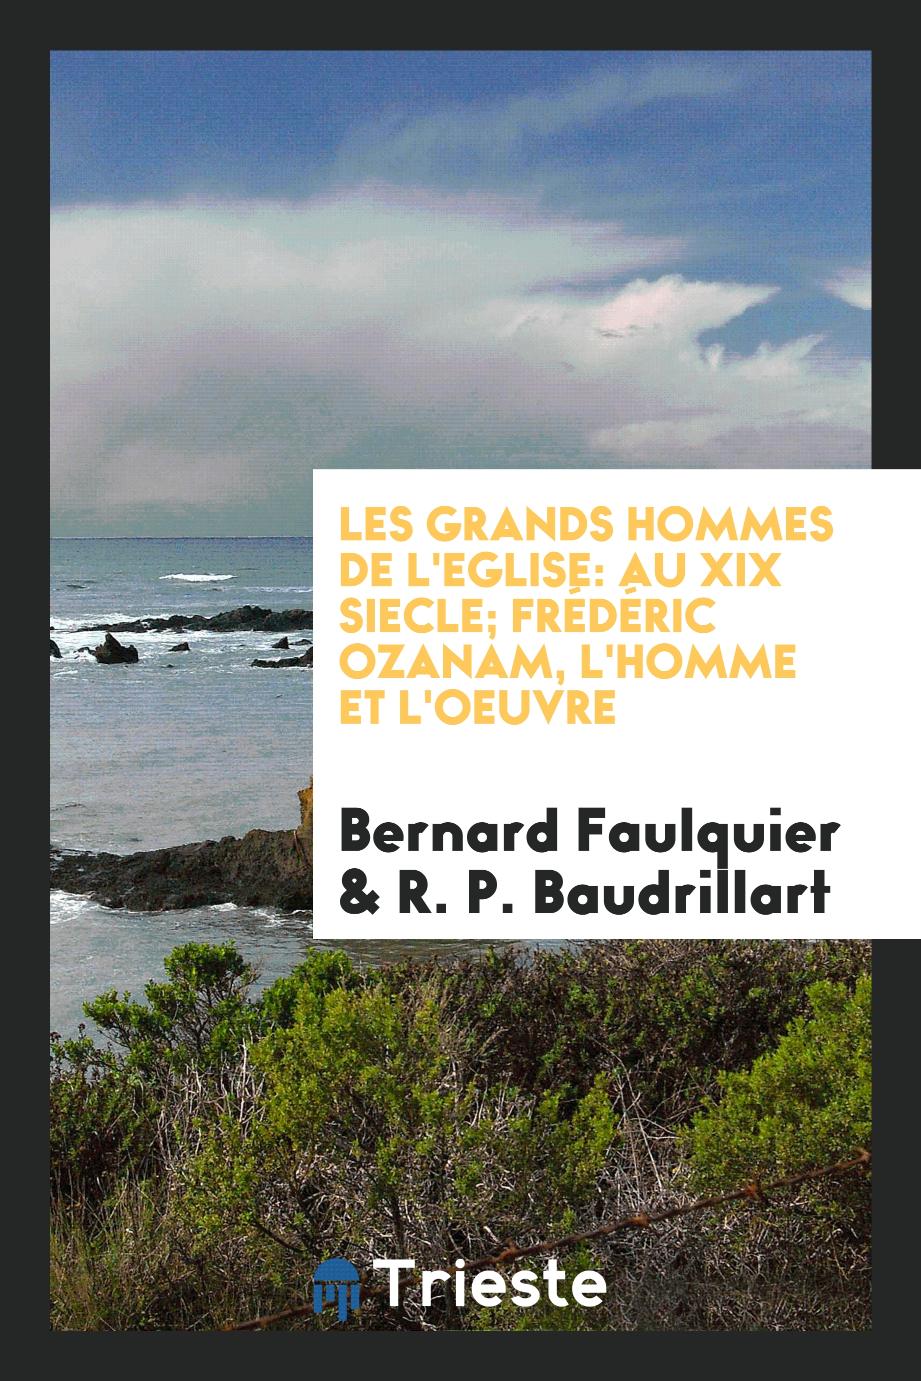 Bernard Faulquier, R. P. Baudrillart - Les Grands Hommes De L'Eglise: AU XIX Siecle; Frédéric Ozanam, L'homme et L'oeuvre